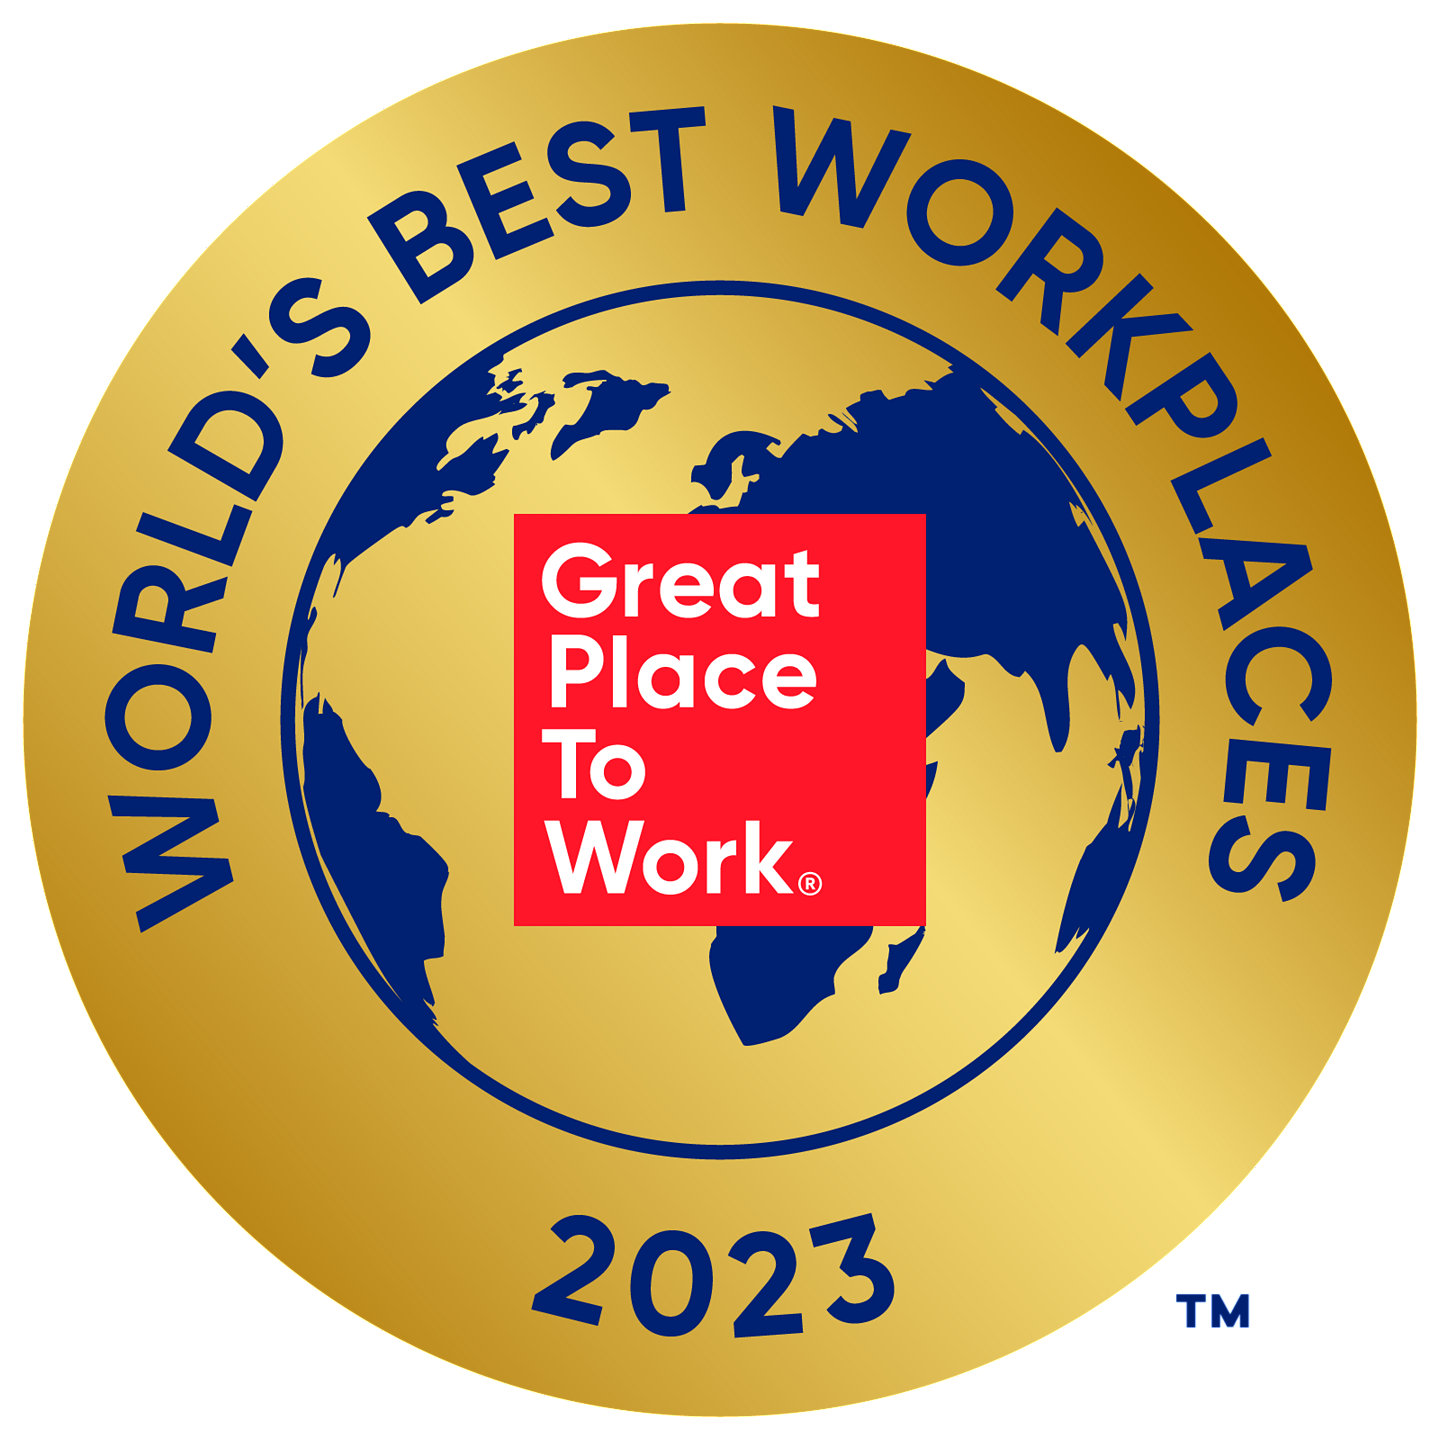 Список лучших работодателей мира 2023 года. Лучшие работодатели мира